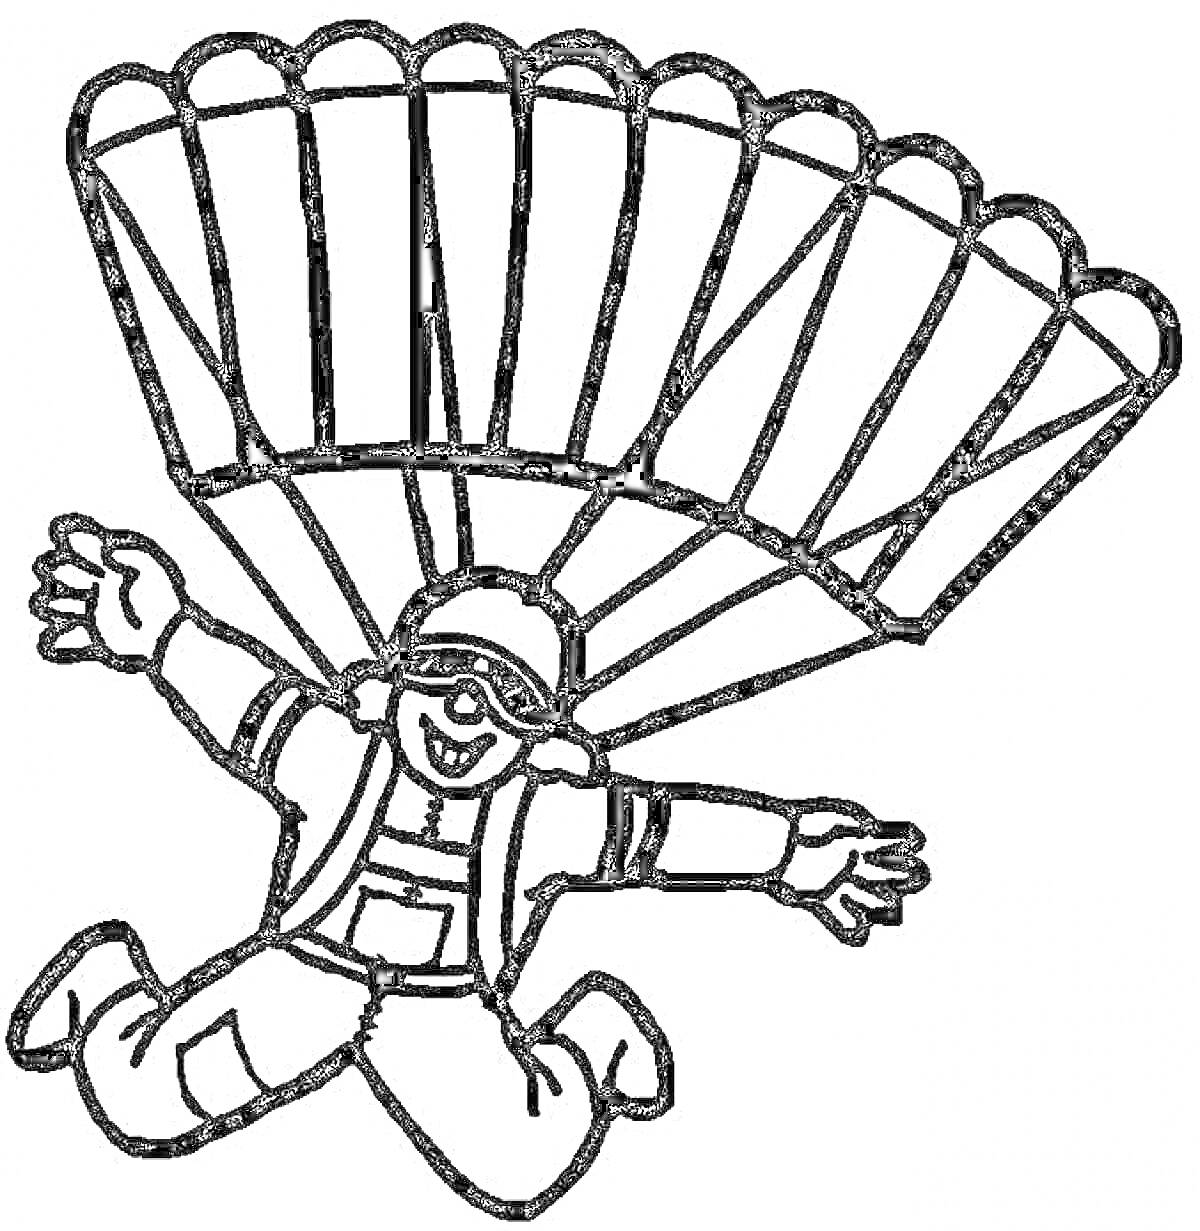 Парашютист с расправленным парашютом, в шлеме и очках, в комбинезоне